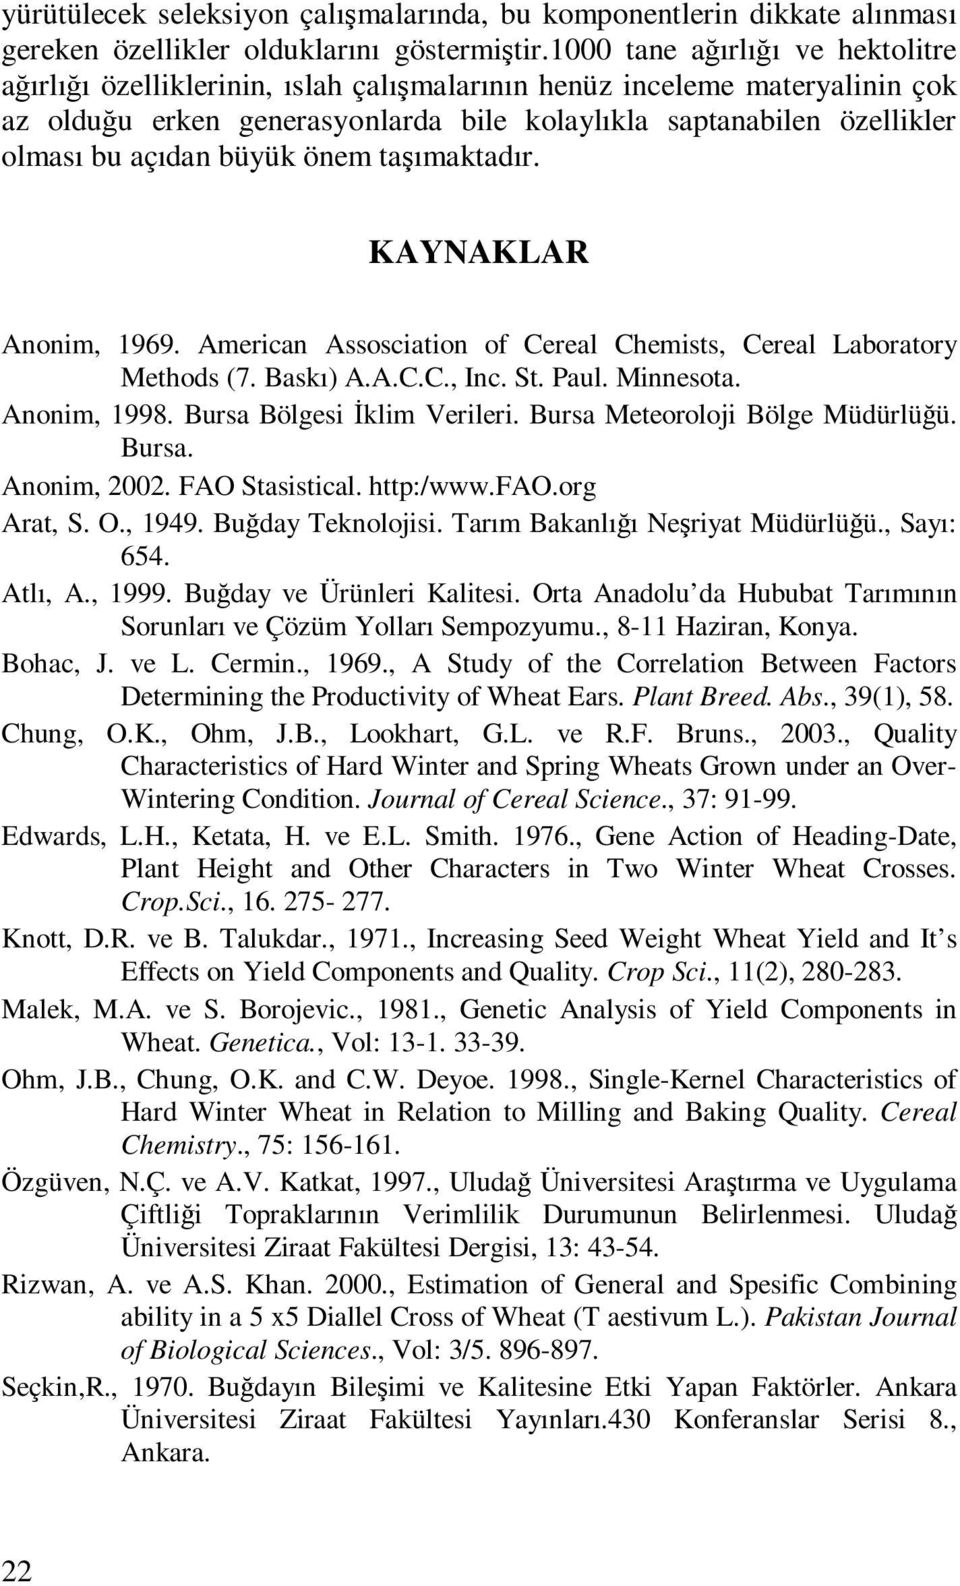 büyük önem taşımaktadır. KAYNAKLAR Anonim, 1969. American Assosciation of Cereal Chemists, Cereal Laboratory Methods (7. Baskı) A.A.C.C., Inc. St. Paul. Minnesota. Anonim, 1998.